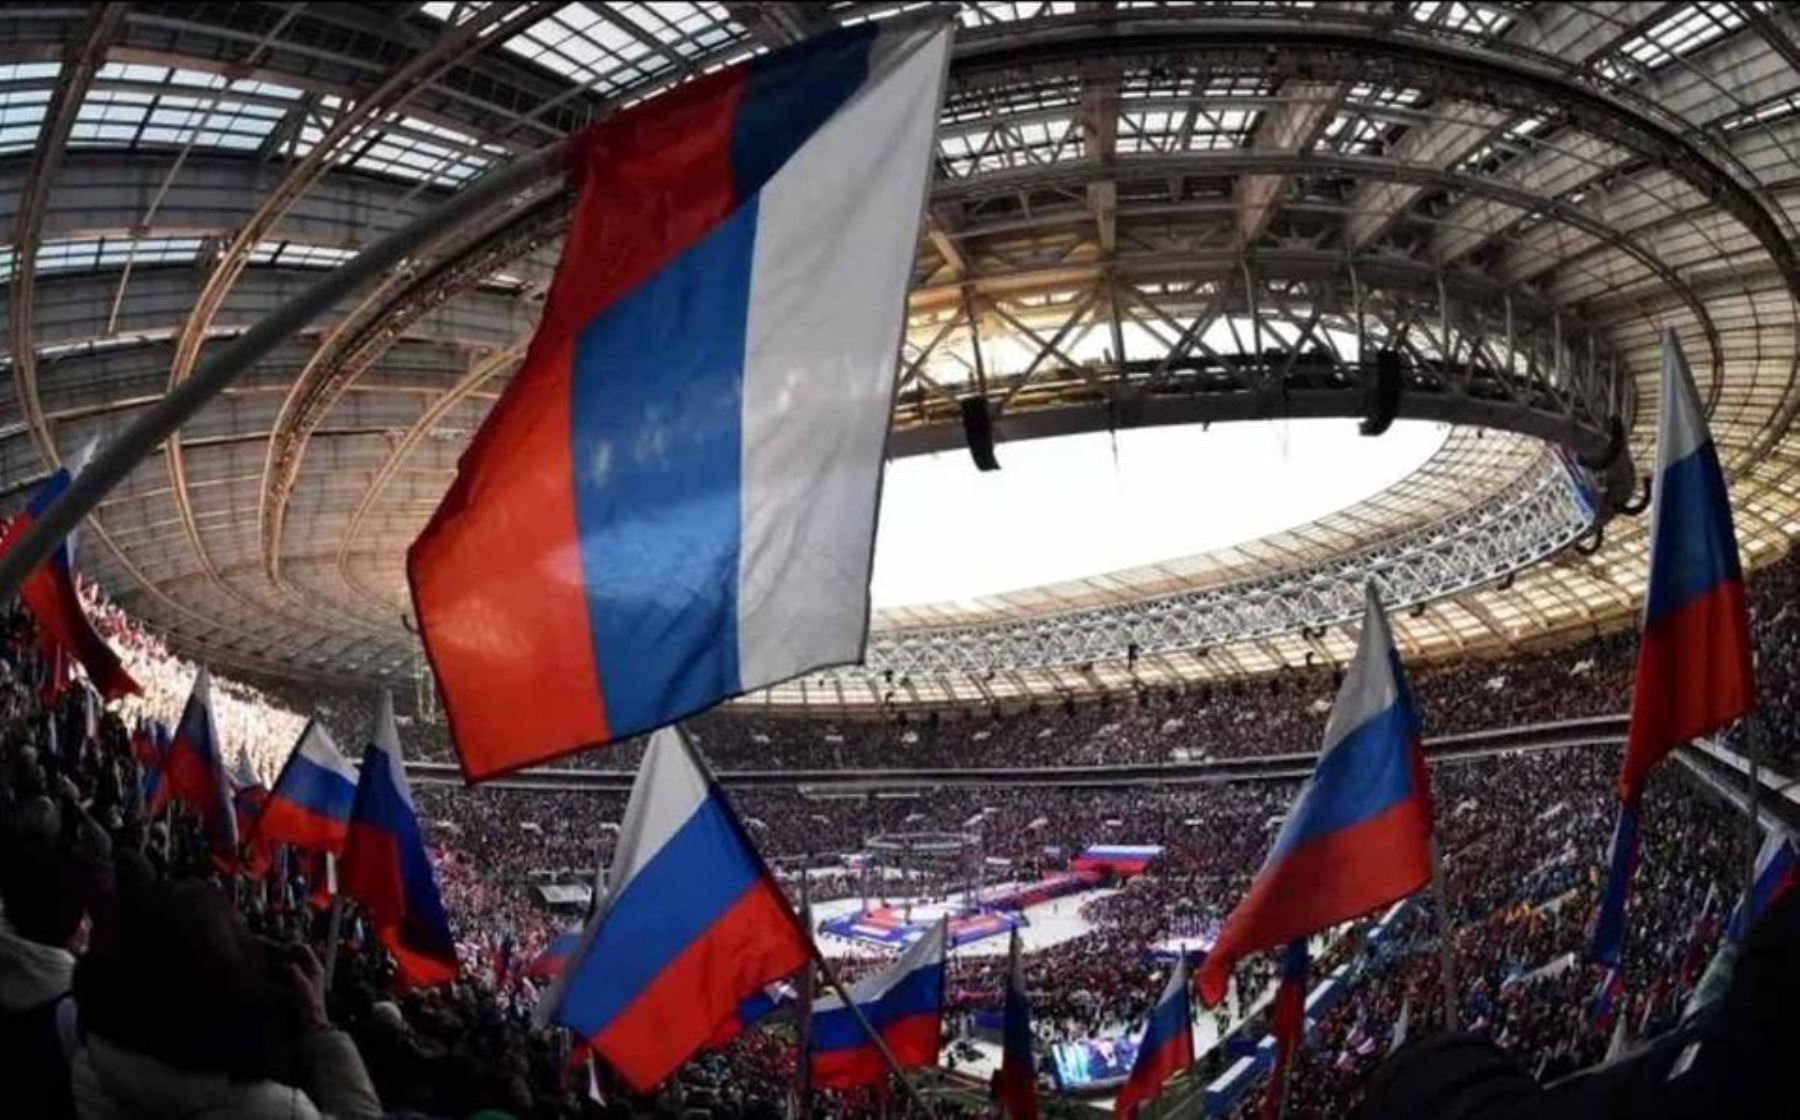 Rusia, pese a estar excluida del deporte mundial por la invasión de Ucrania, es una de las cuatro candidatas a organizar las Eurocopas de 2028 y 2032